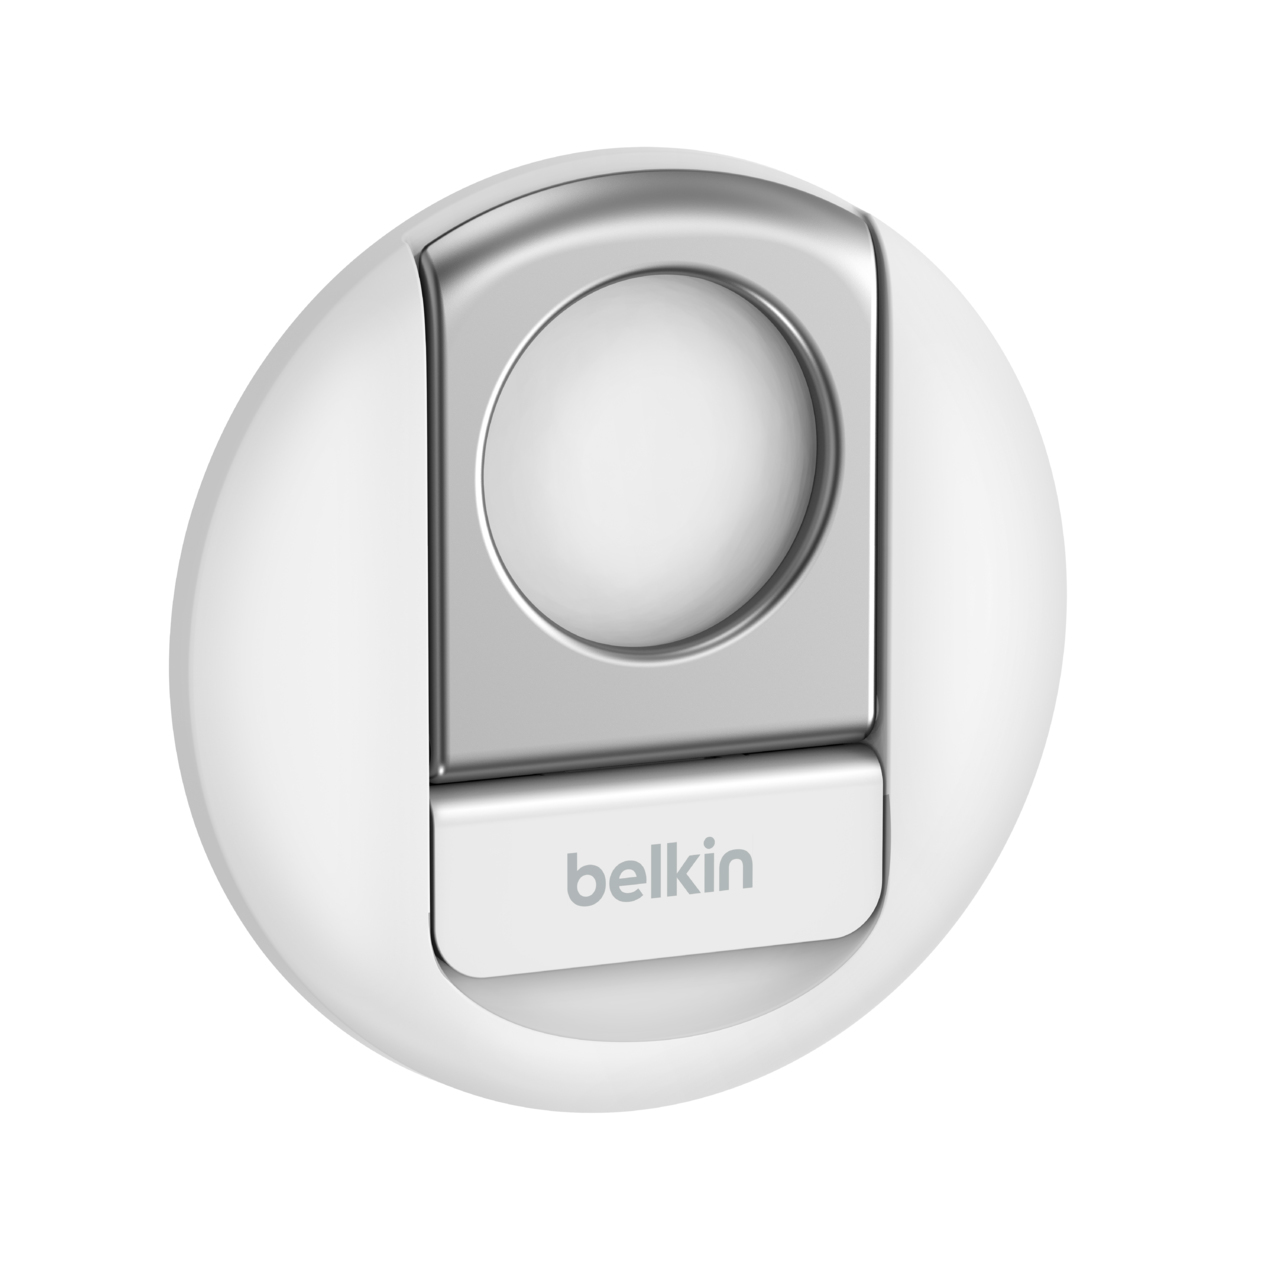 Belkin Magnetbefestigung für Handy - MagSafe-kompatibel, für Mac Notebooks